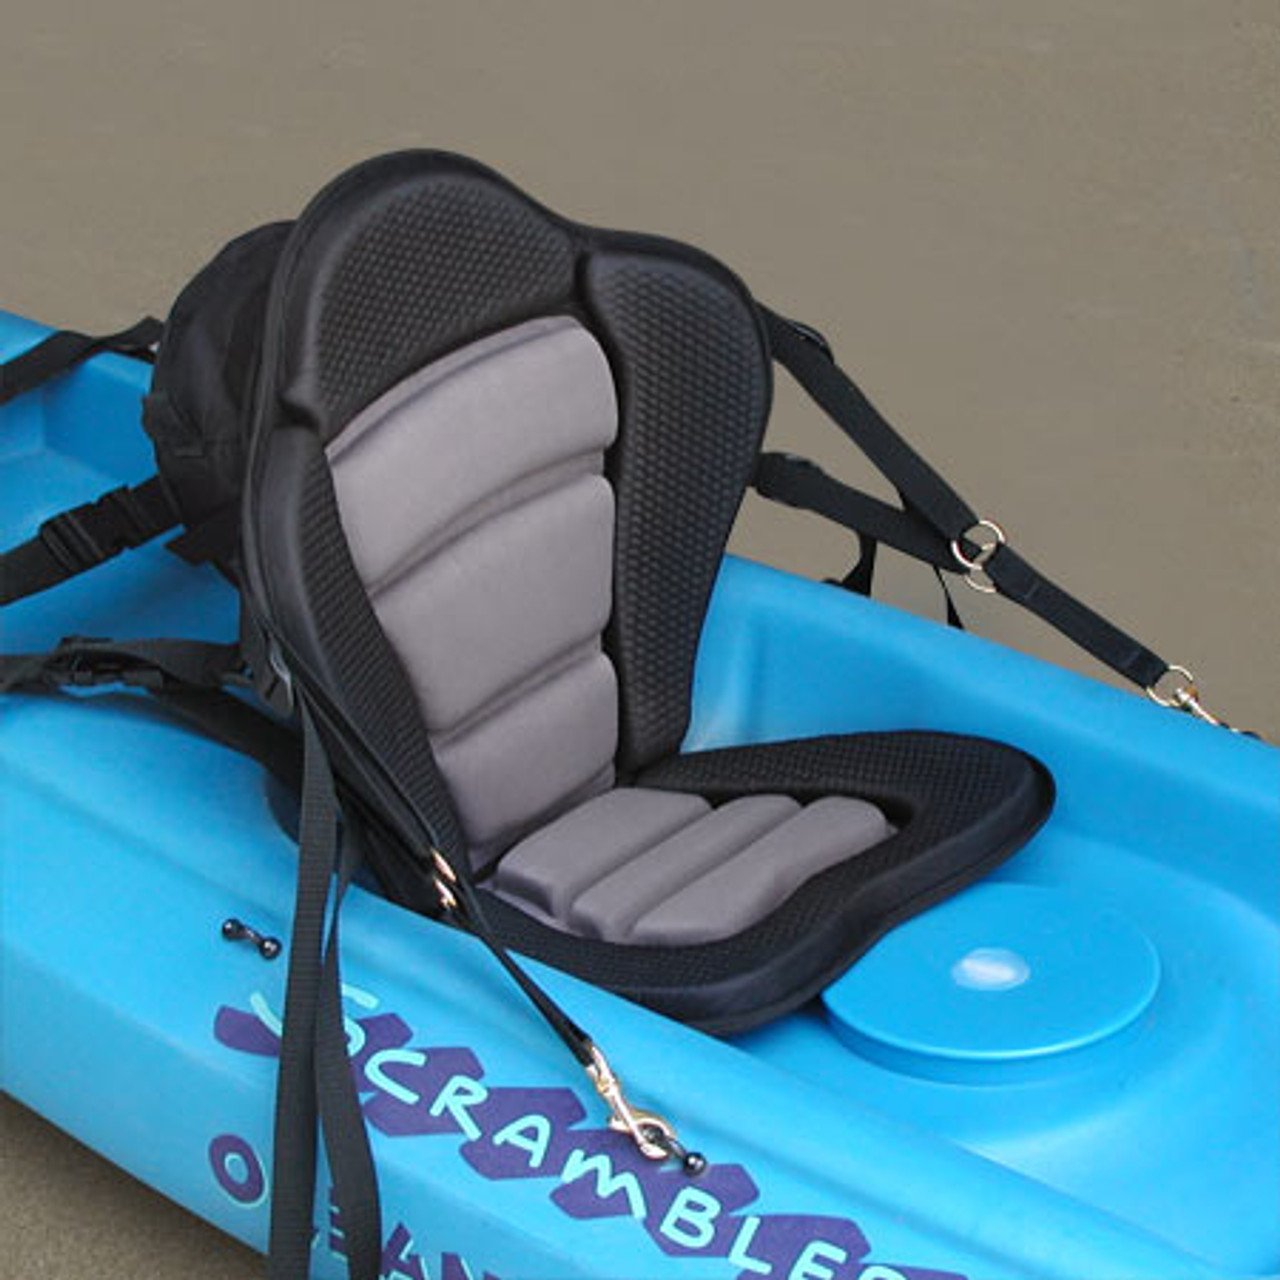 Kayak Fishing Seat, Molded Foam Angler Kayak Seat, Kayak Seat with